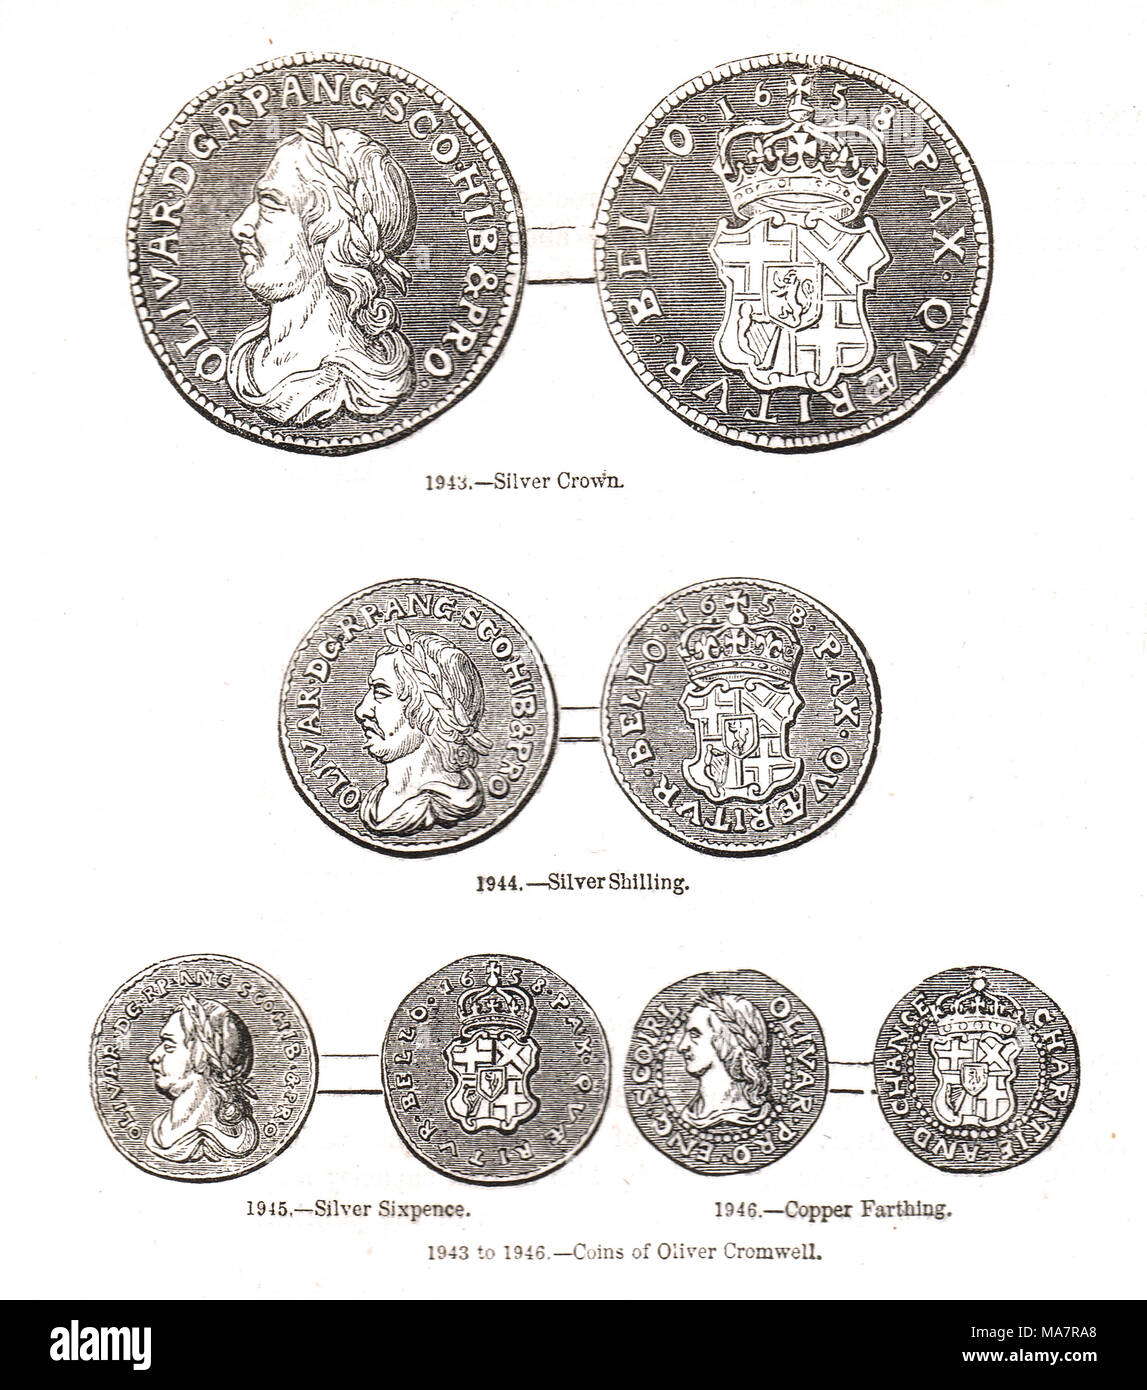 Münzen aus der Zeit von Oliver Cromwell, der Währung des Commonwealth von England, Schottland und Irland. Stockfoto